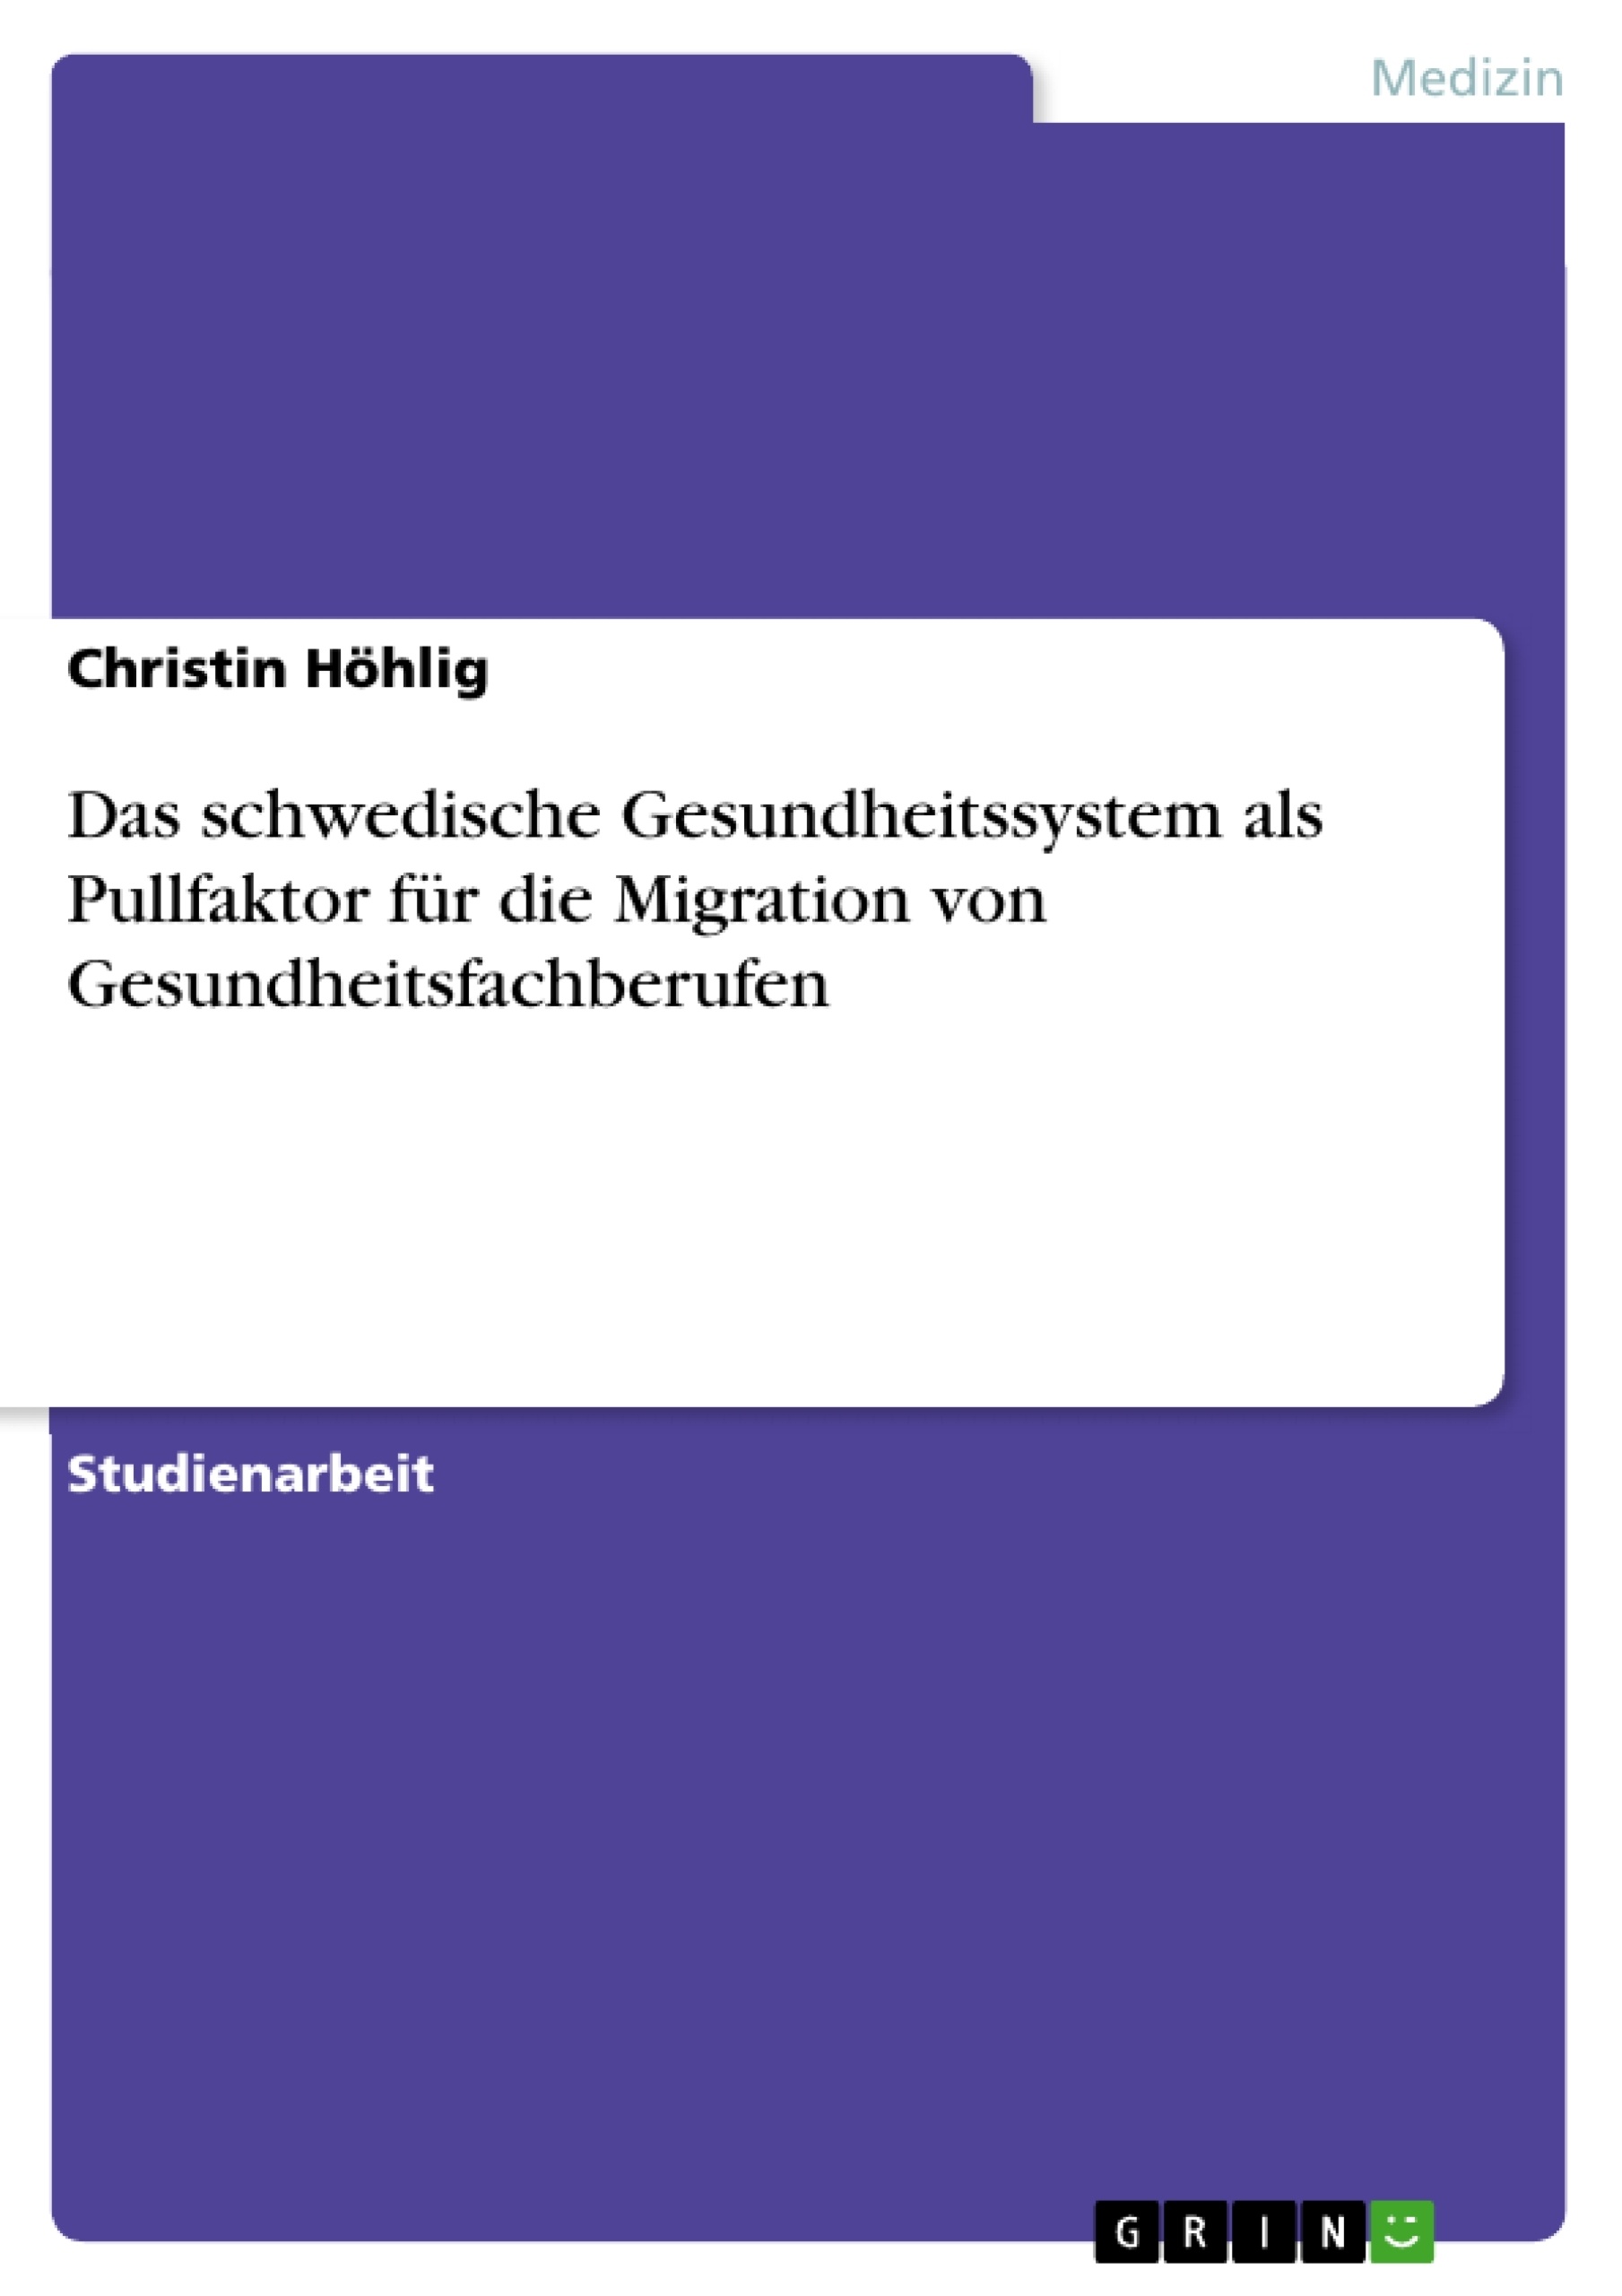 Titre: Das schwedische Gesundheitssystem als Pullfaktor für die Migration von Gesundheitsfachberufen